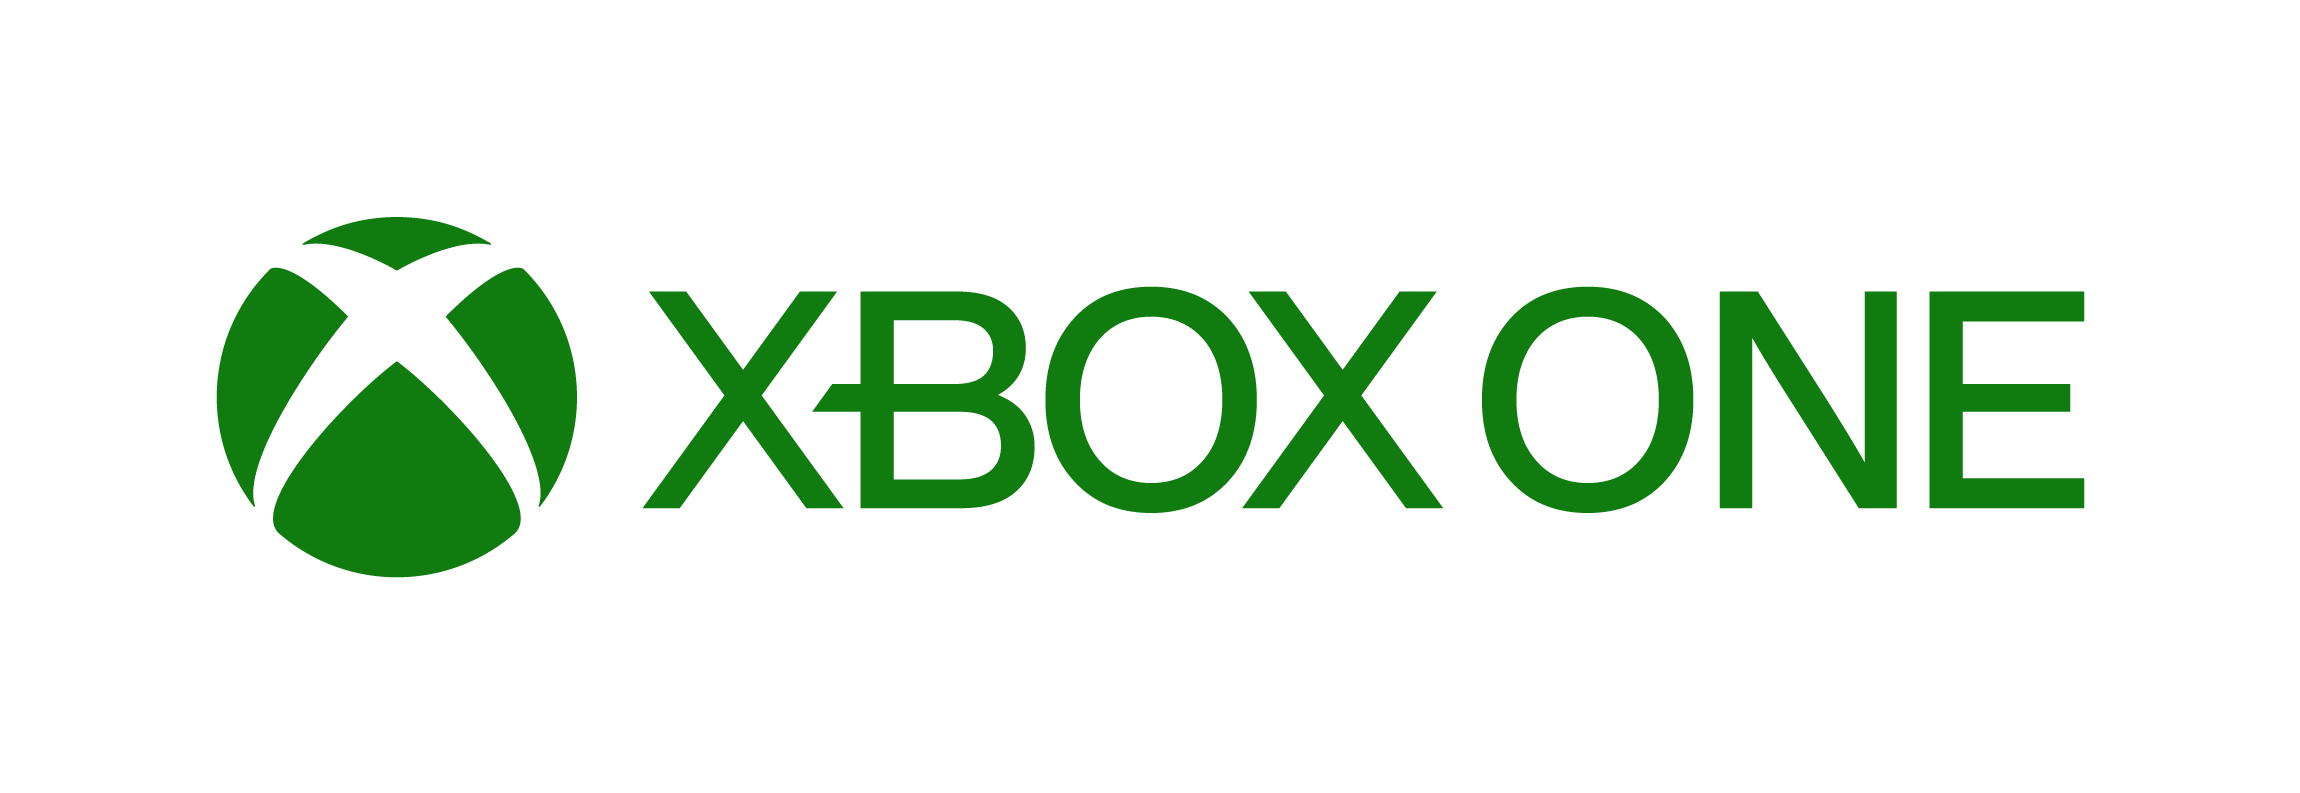 Xbox One |